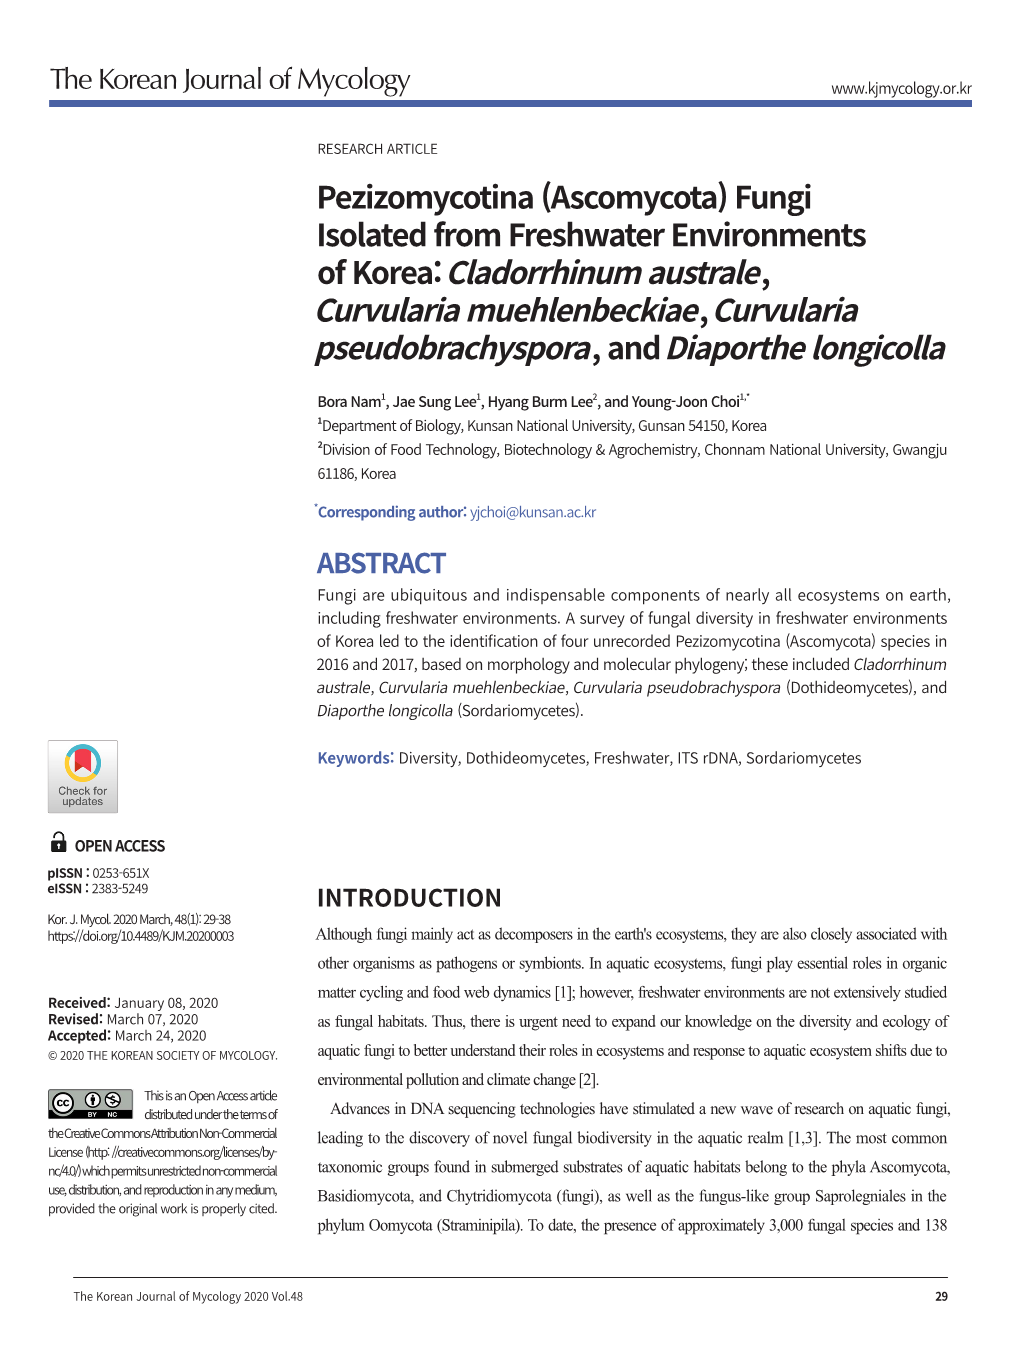 Pezizomycotina (Ascomycota) Fungi Isolated from Freshwater